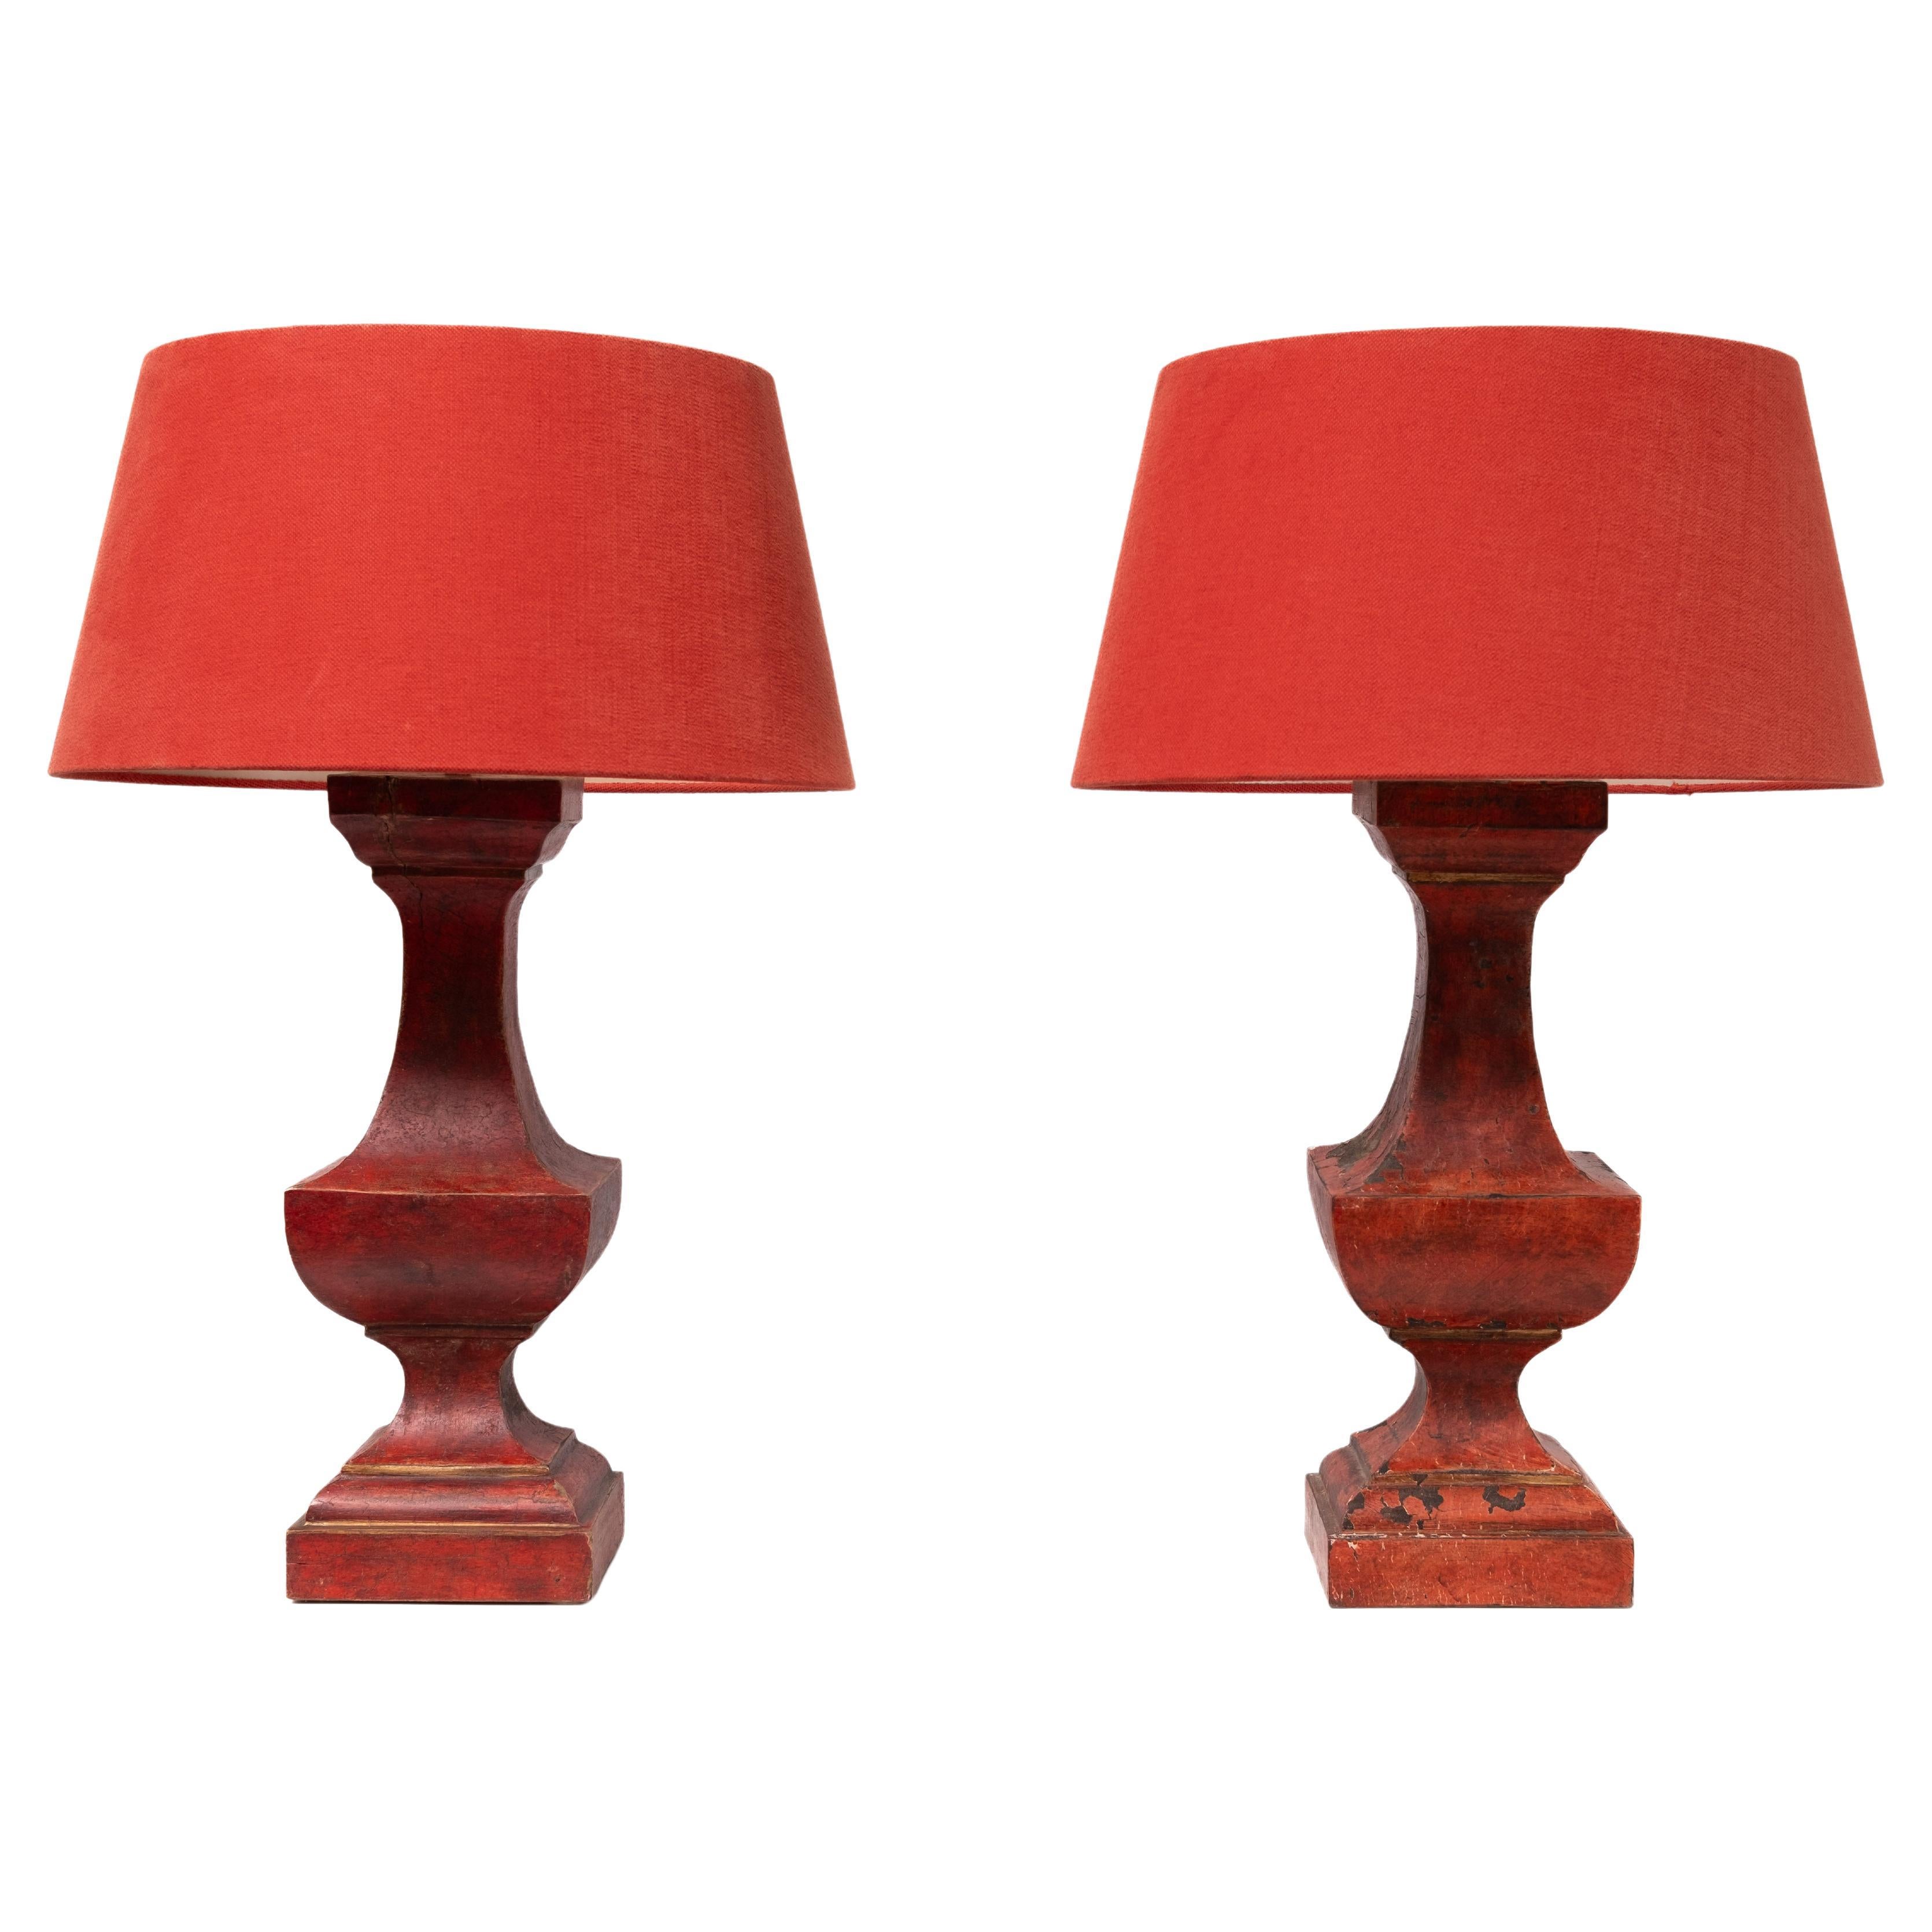 Paire de lampes de table françaises en bois de gesso rouge avec abat-jour rouge